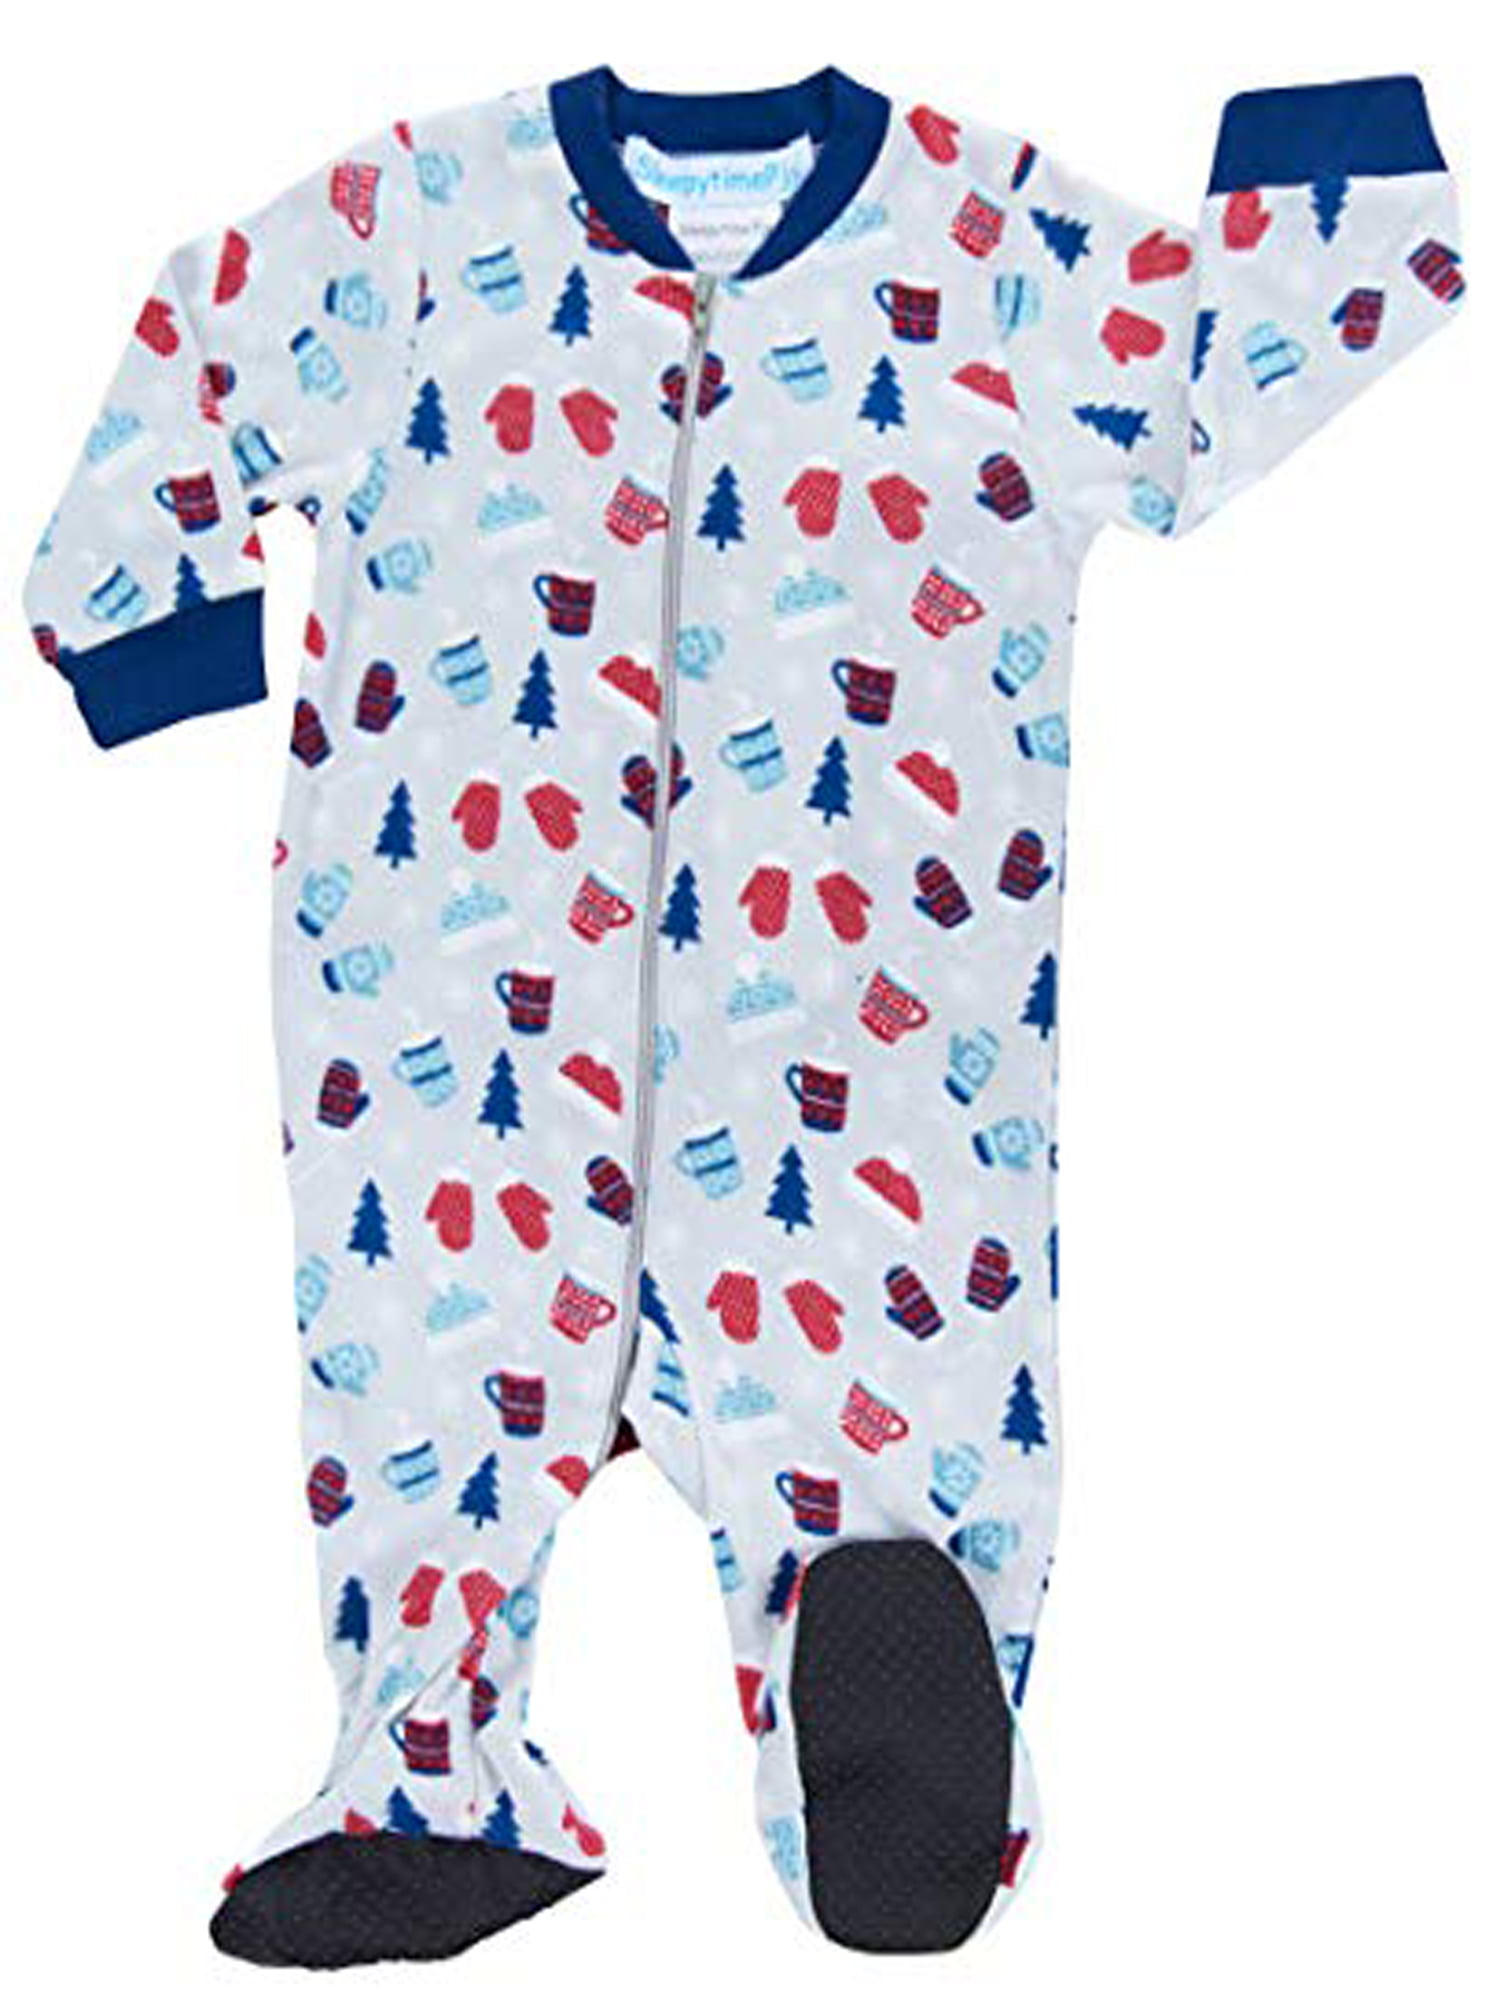 SleepytimePJs Holiday Infant Full-Zip Onesie Baby Pajamas PJs